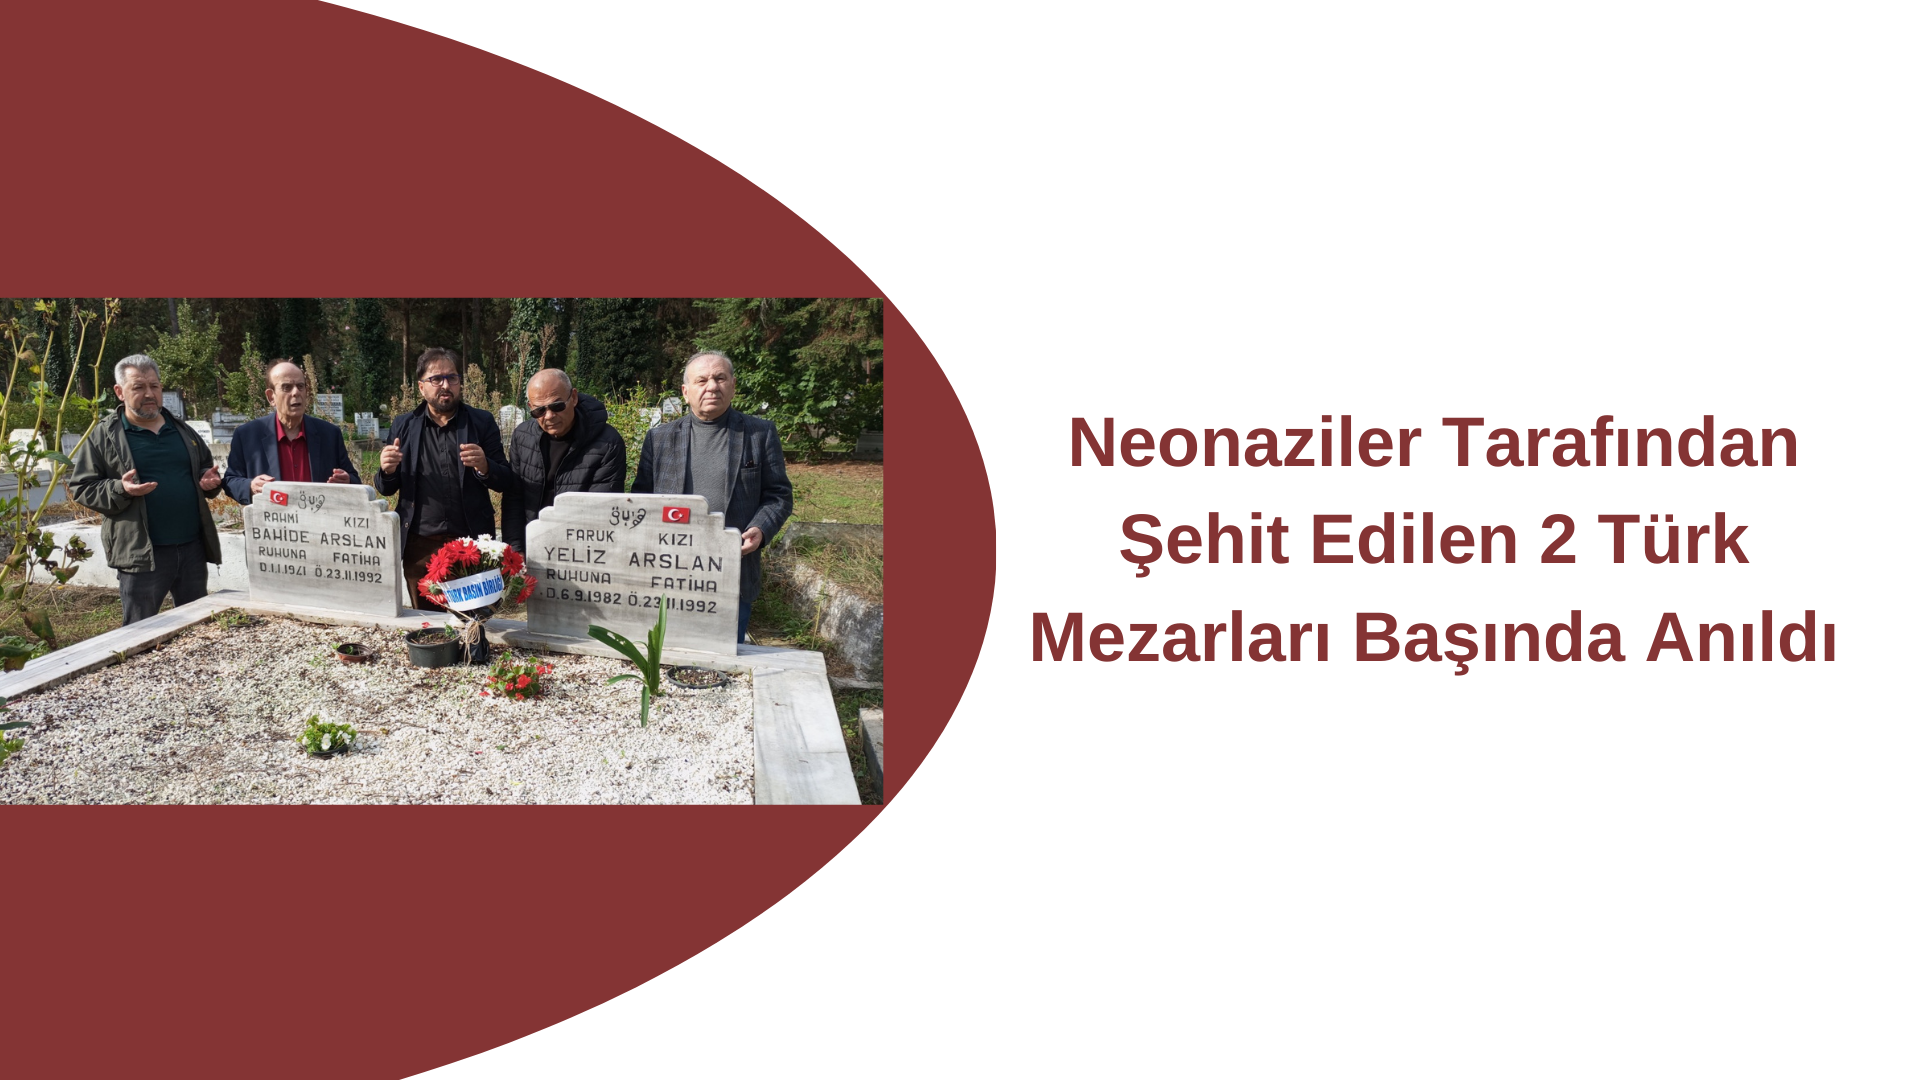 Neonaziler Tarafından Şehit Edilen 2 Türk Mezarları Başında Anıldı